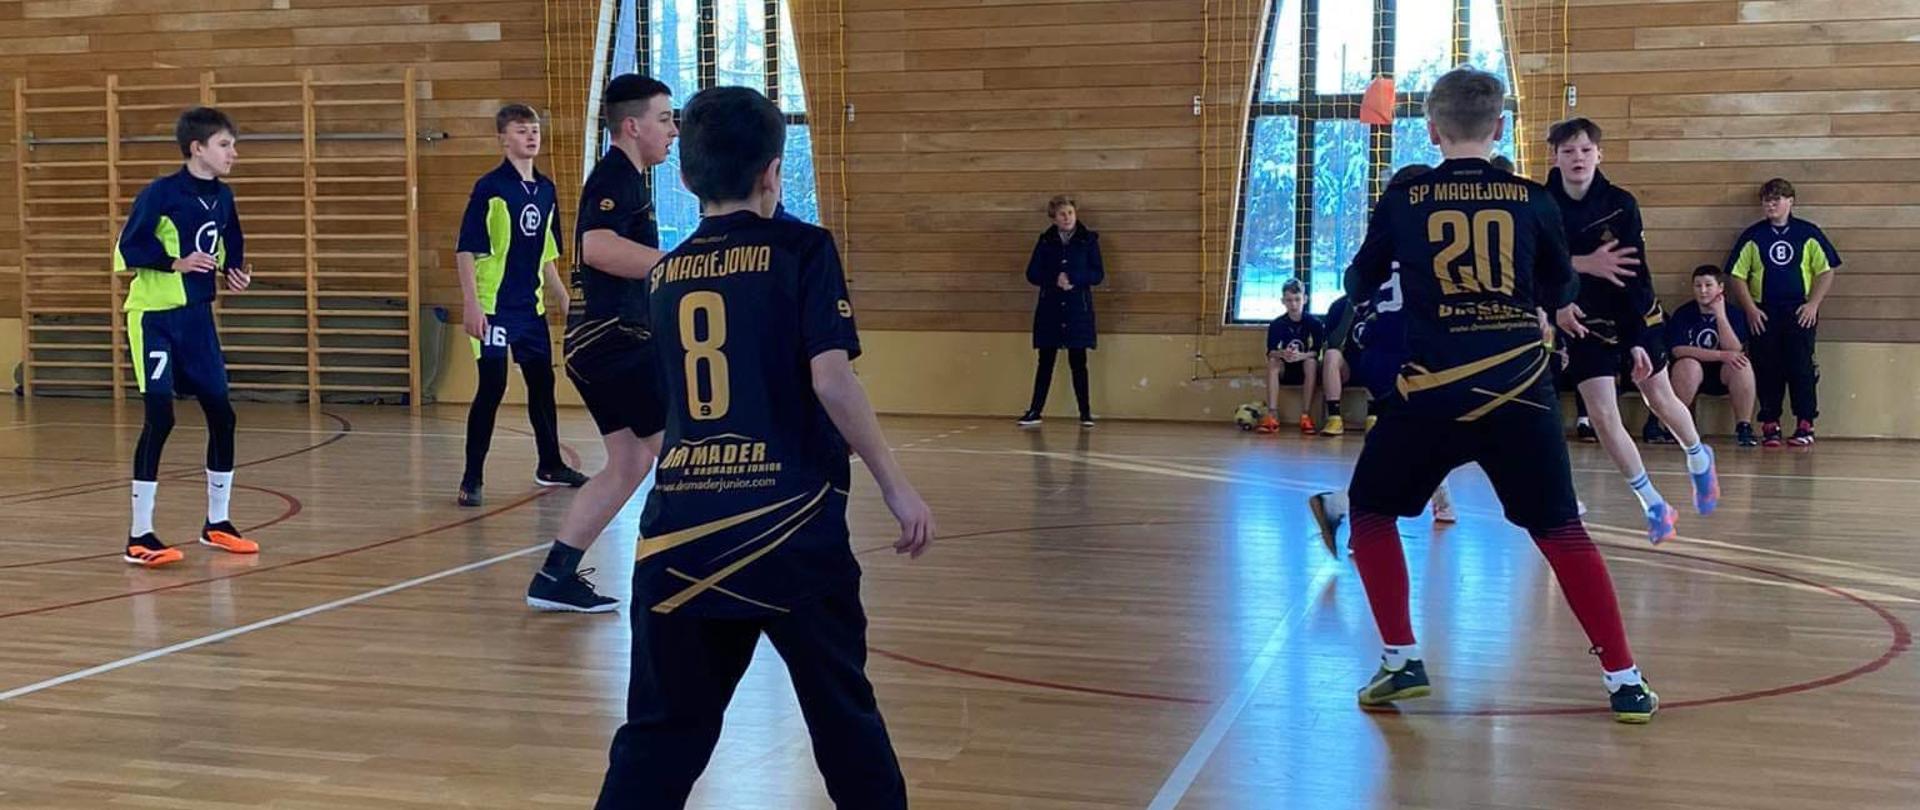 Na sali gimnastycznej Szkoły Podstawowej w Maciejowej grają w piłkę ręczną nasi zawodnicy w czarnych koszulkach ze złotymi napisami, widoczni są też zawodnicy drużyny przeciwnej w granatowo-zielonych koszulkach